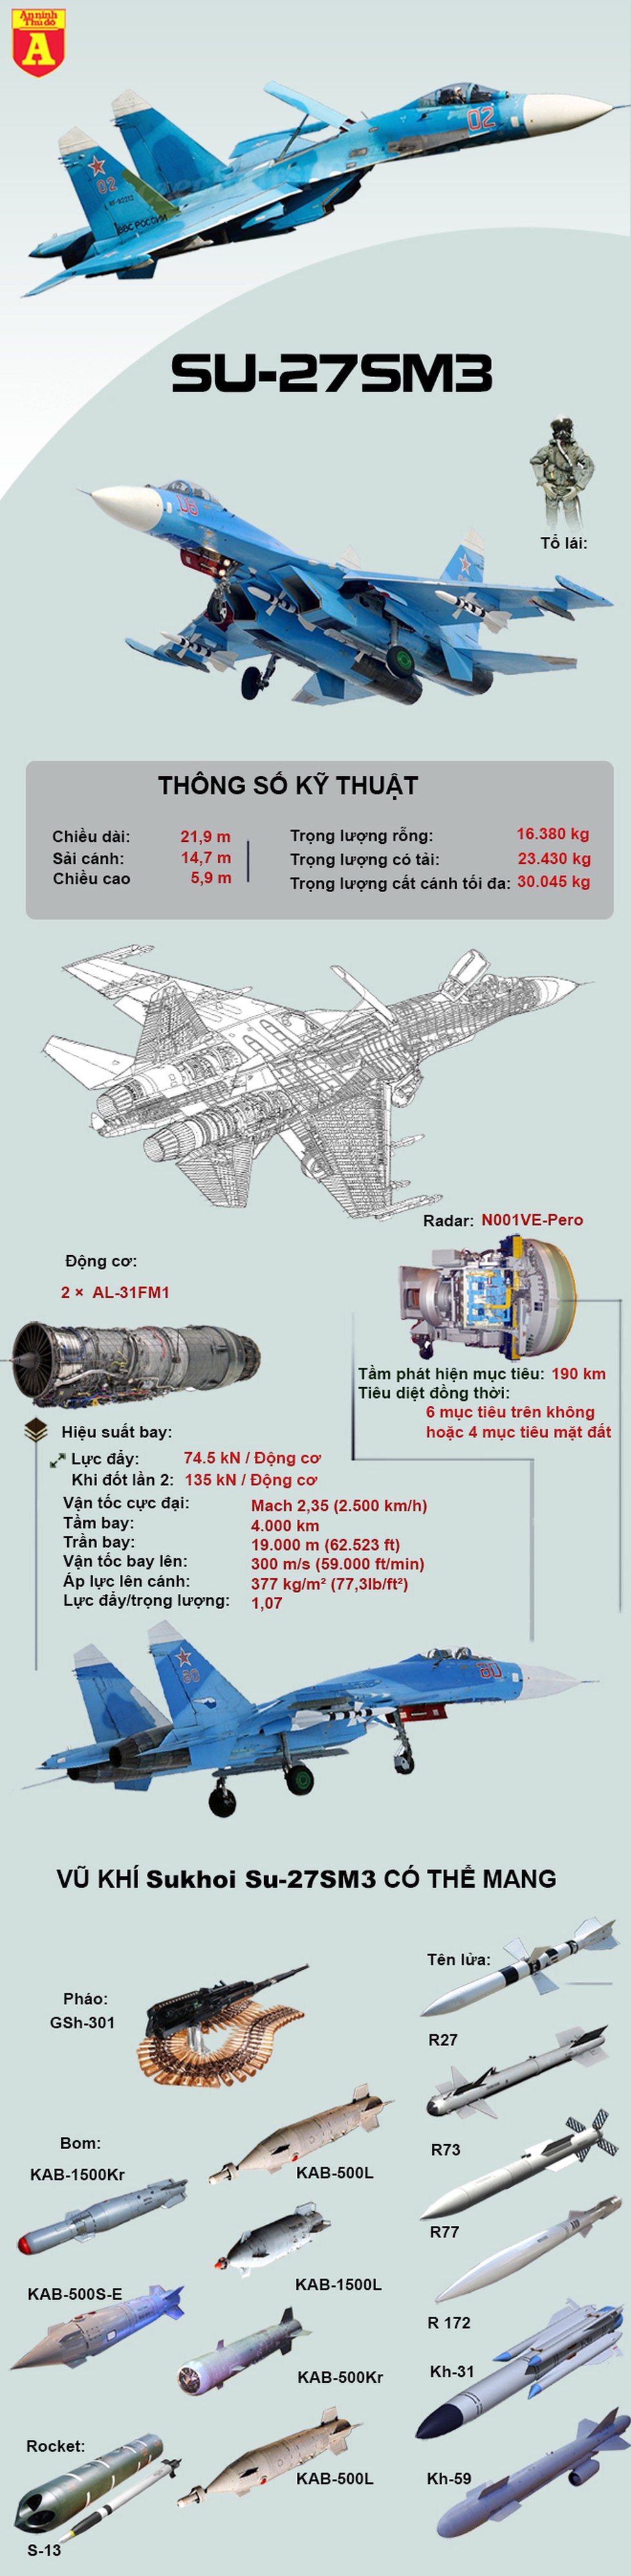 [Infographics] Chiến đấu cơ Su-27 lao xuống đất bốc cháy, hai phi công thiệt mạng - Ảnh 1